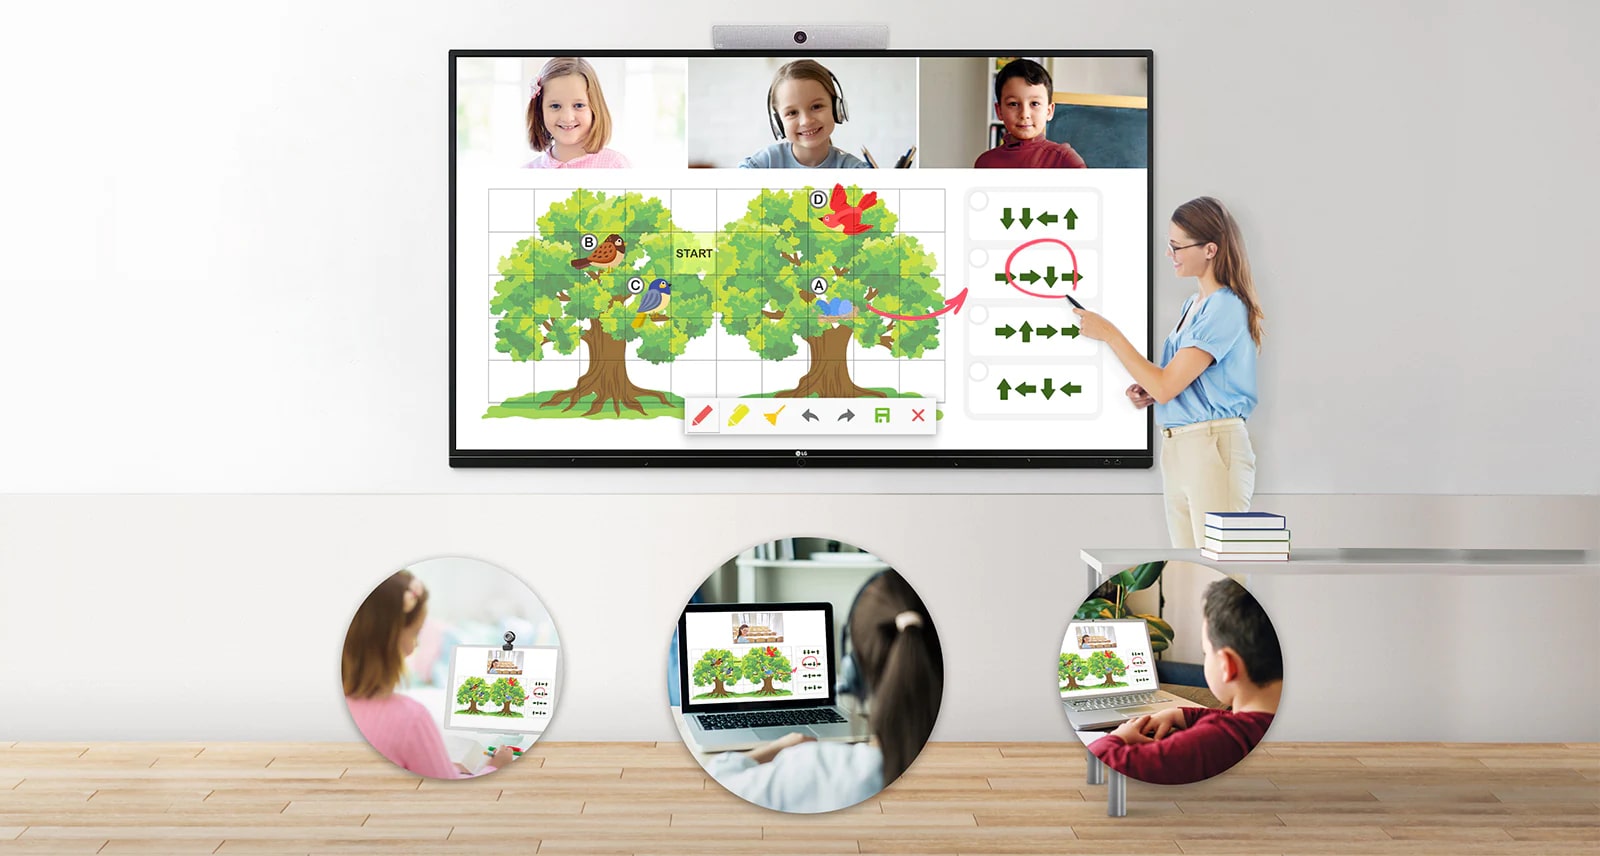 Quando a mulher marca no quadro digital, a marcação também aparece na tela dos dispositivos eletrônicos das crianças, ao mesmo tempo.